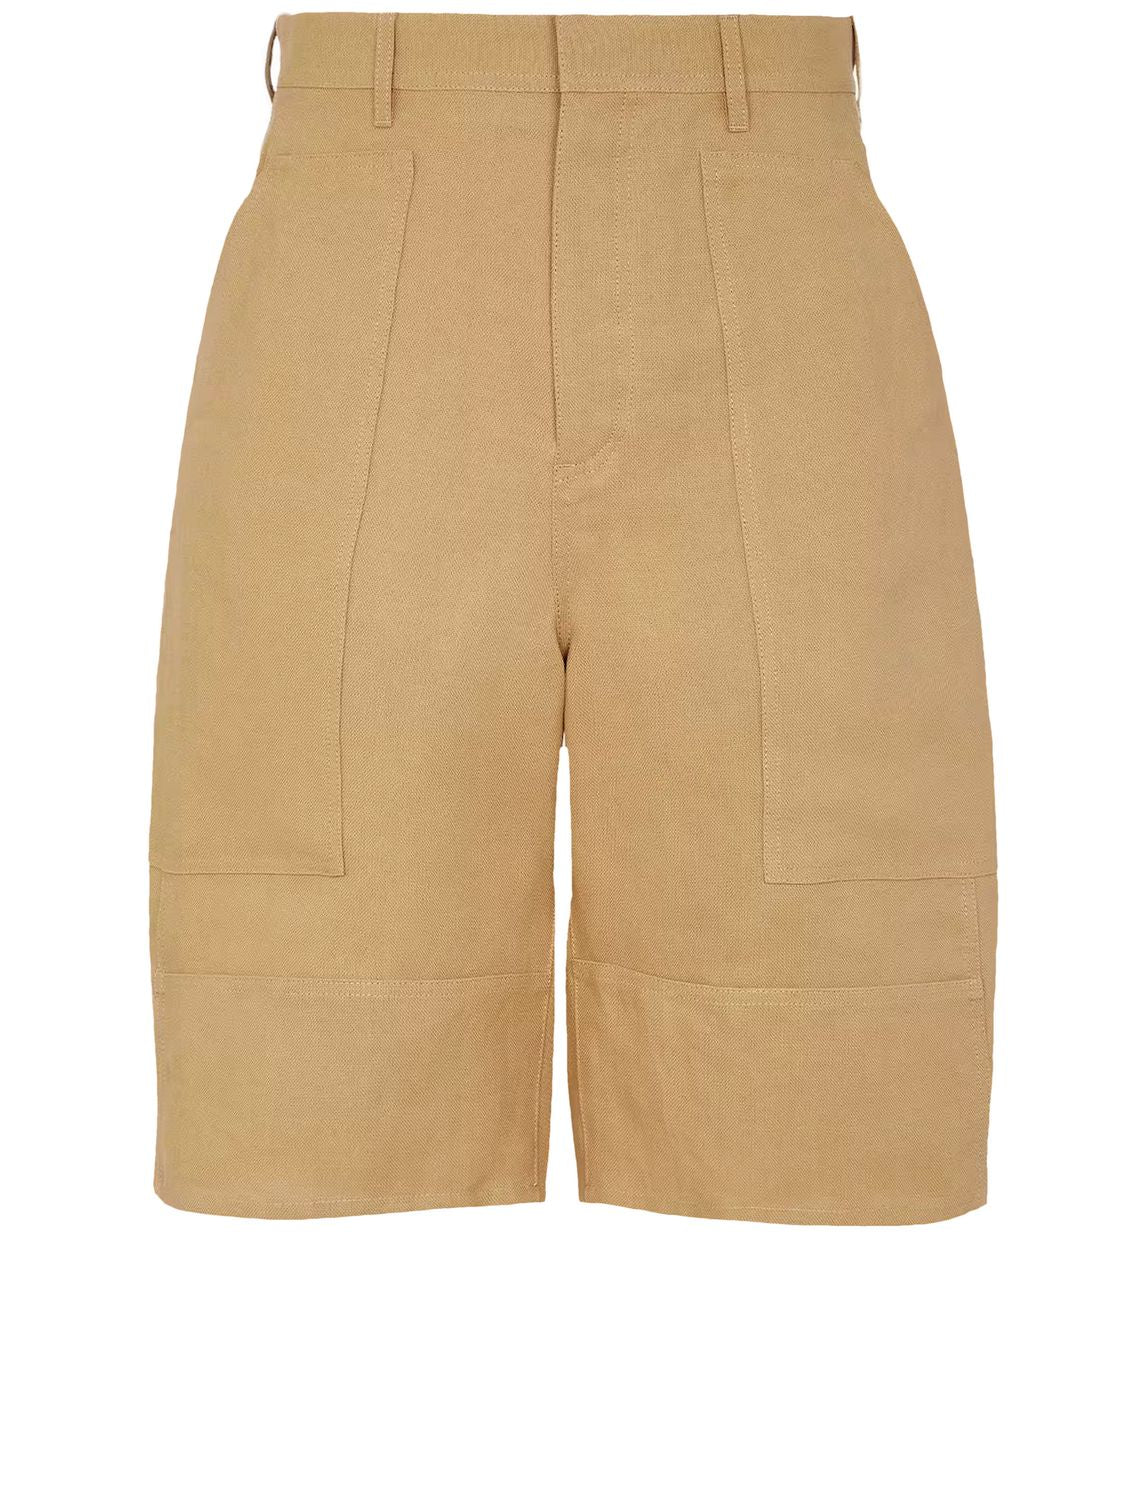 Beige Bermuda Shorts có túi kiểu trang phục công nhân chất liệu vải Canvas